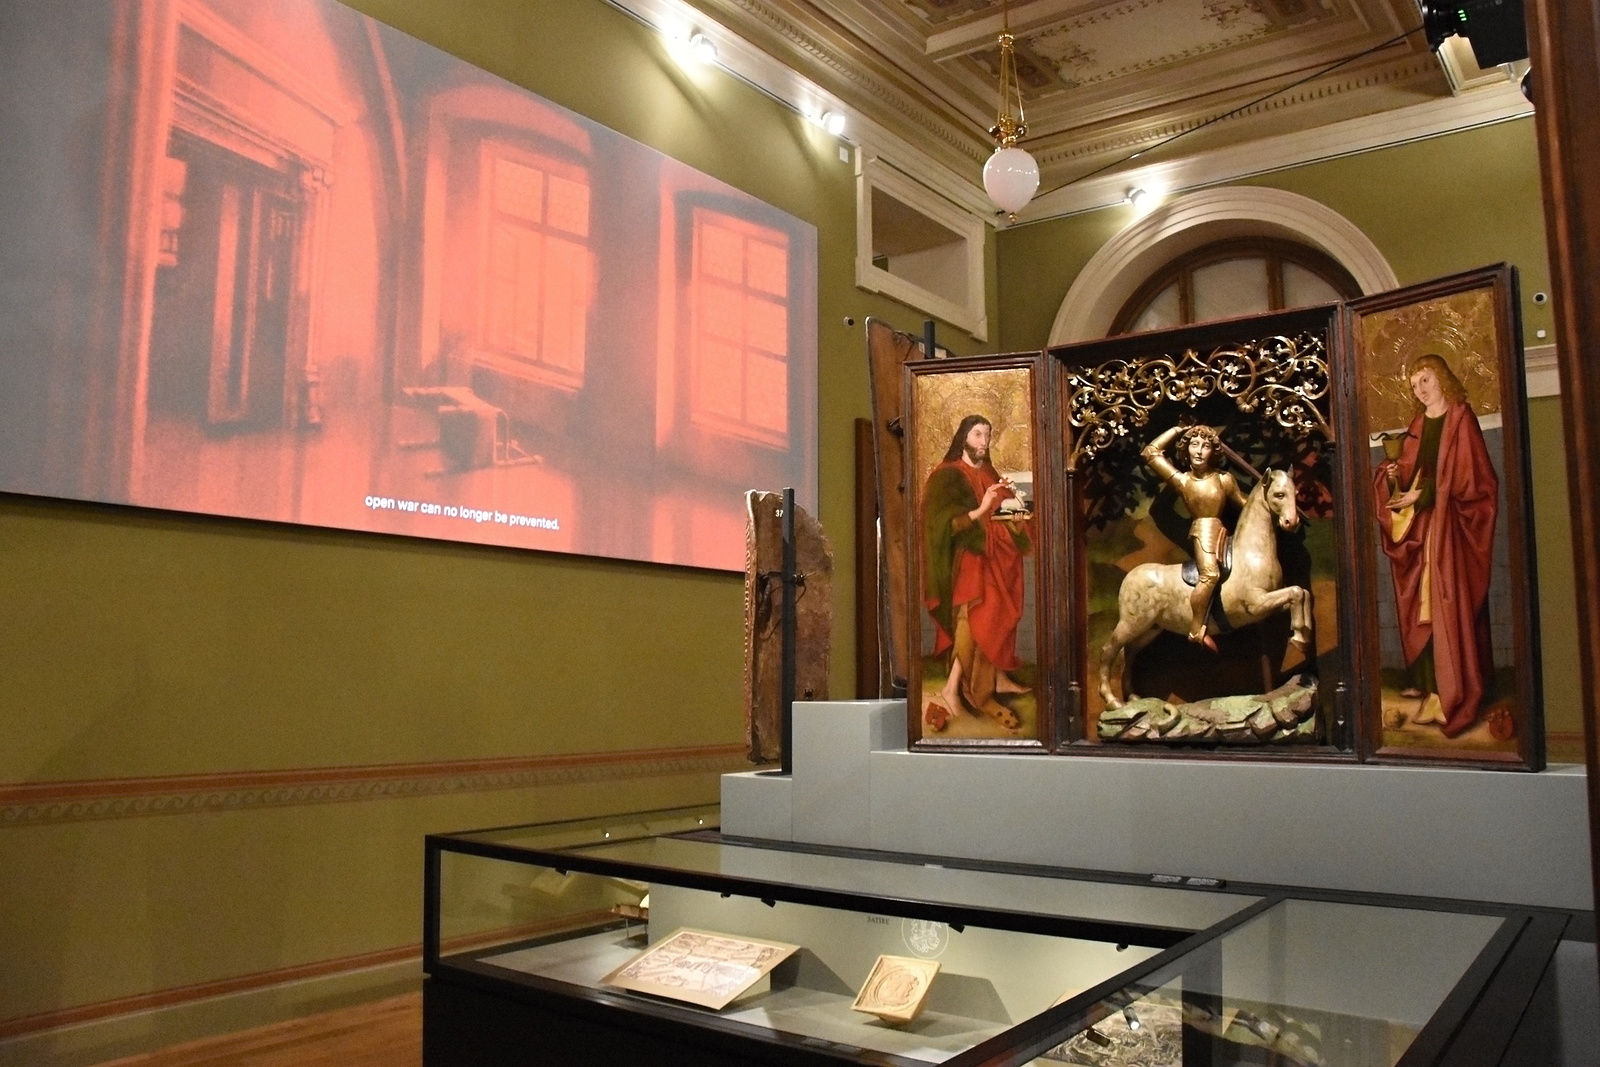 PODÍVEJTE SE: Nový pohled na historii. Národní muzeum otevřelo výstavu  Dějiny - Pražský deník